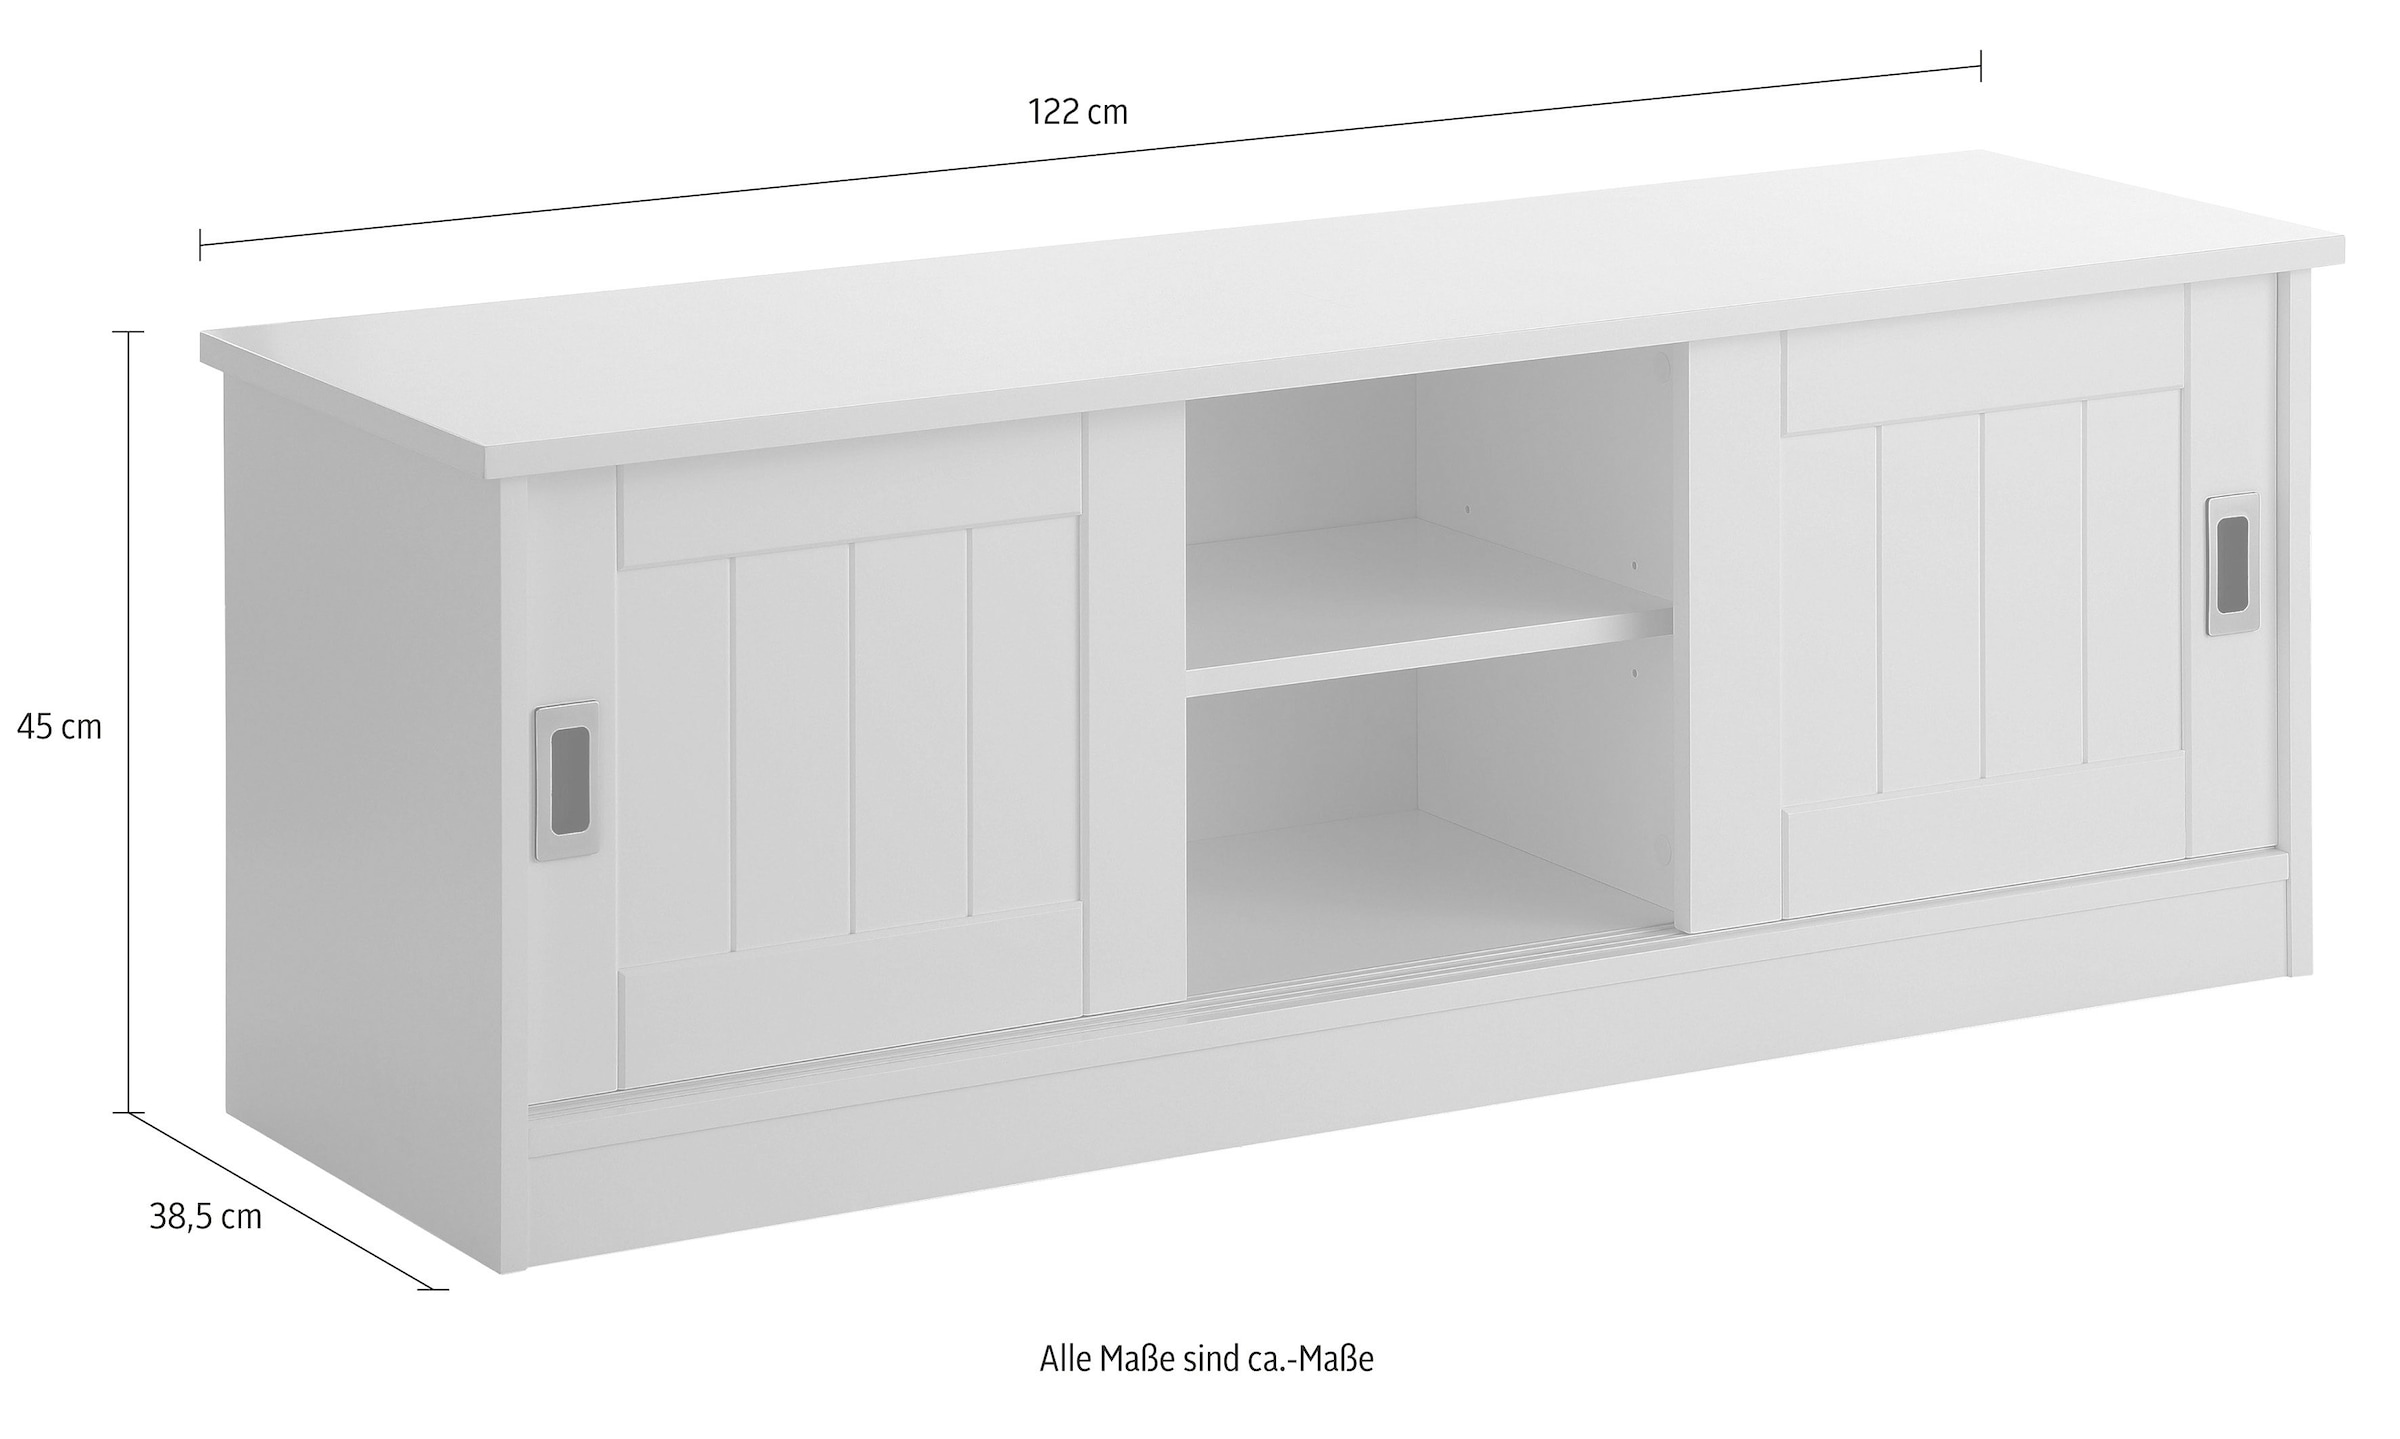 Home affaire Sitzbank »Nekso«, Breite 122 cm, mit Schiebetüren, aus MDF, FSC®-zertifiziert